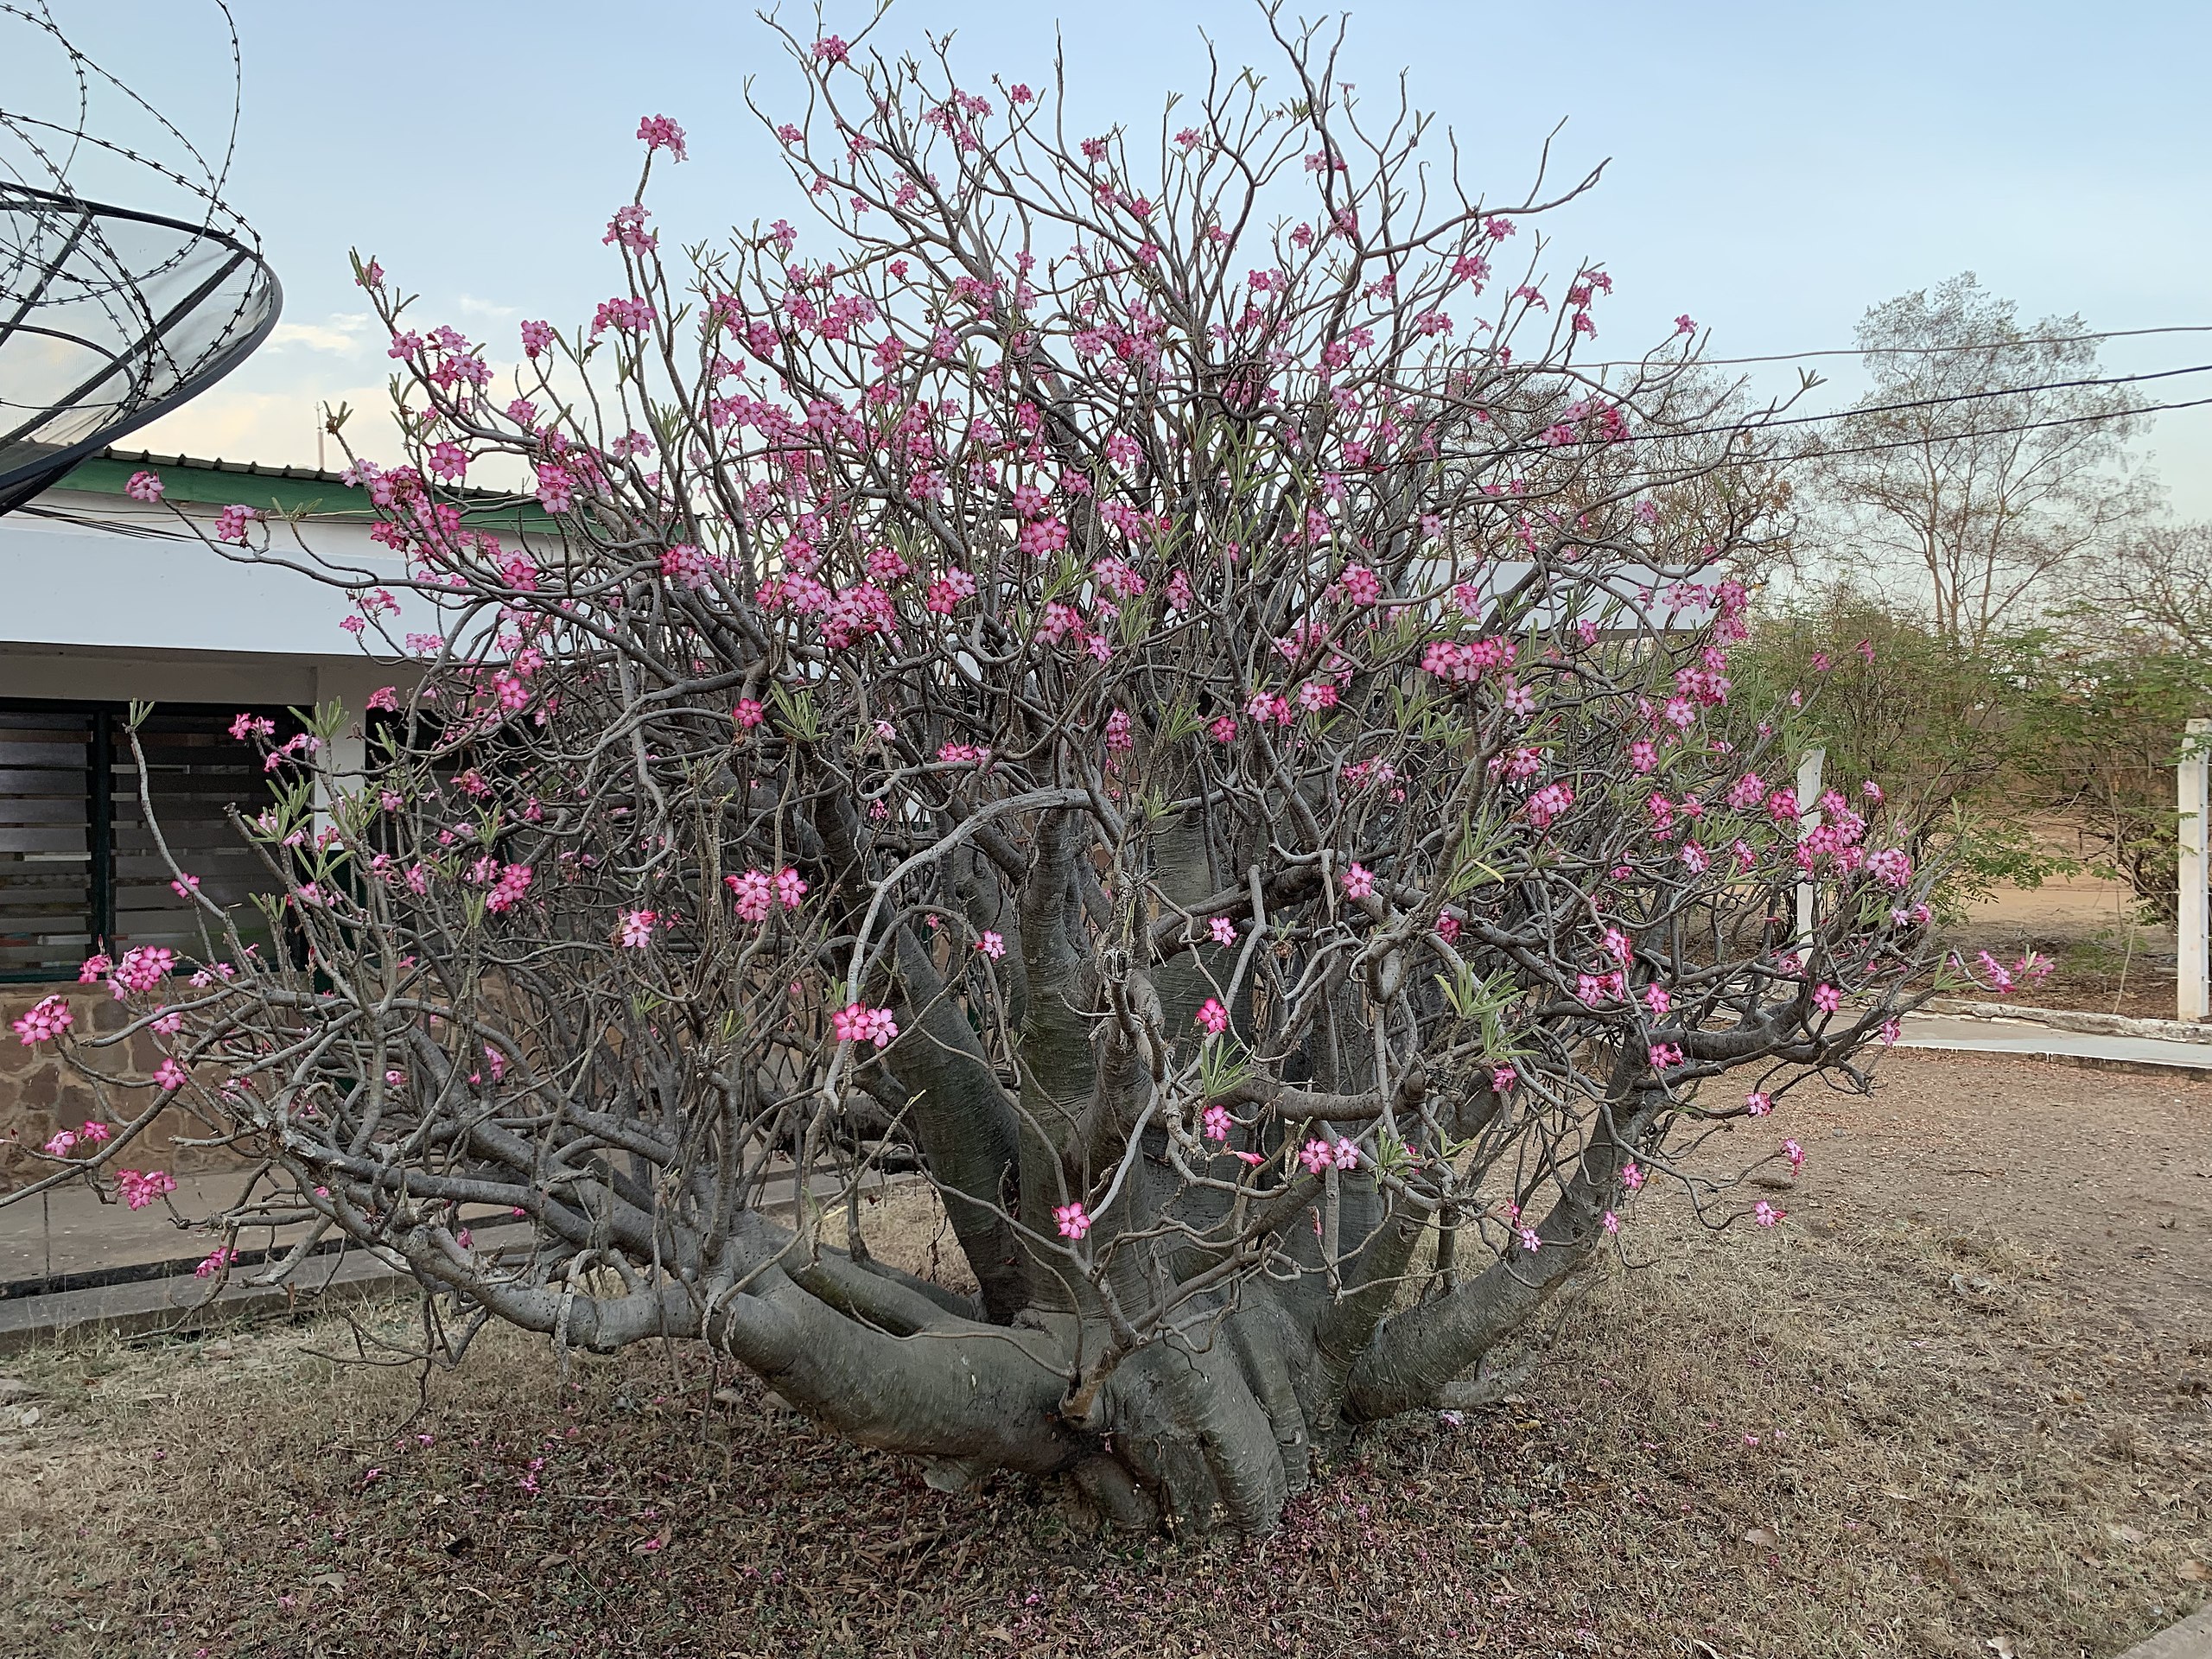 File:Desert Rose (Adenium obesum), Ghana.jpg - Wikipedia